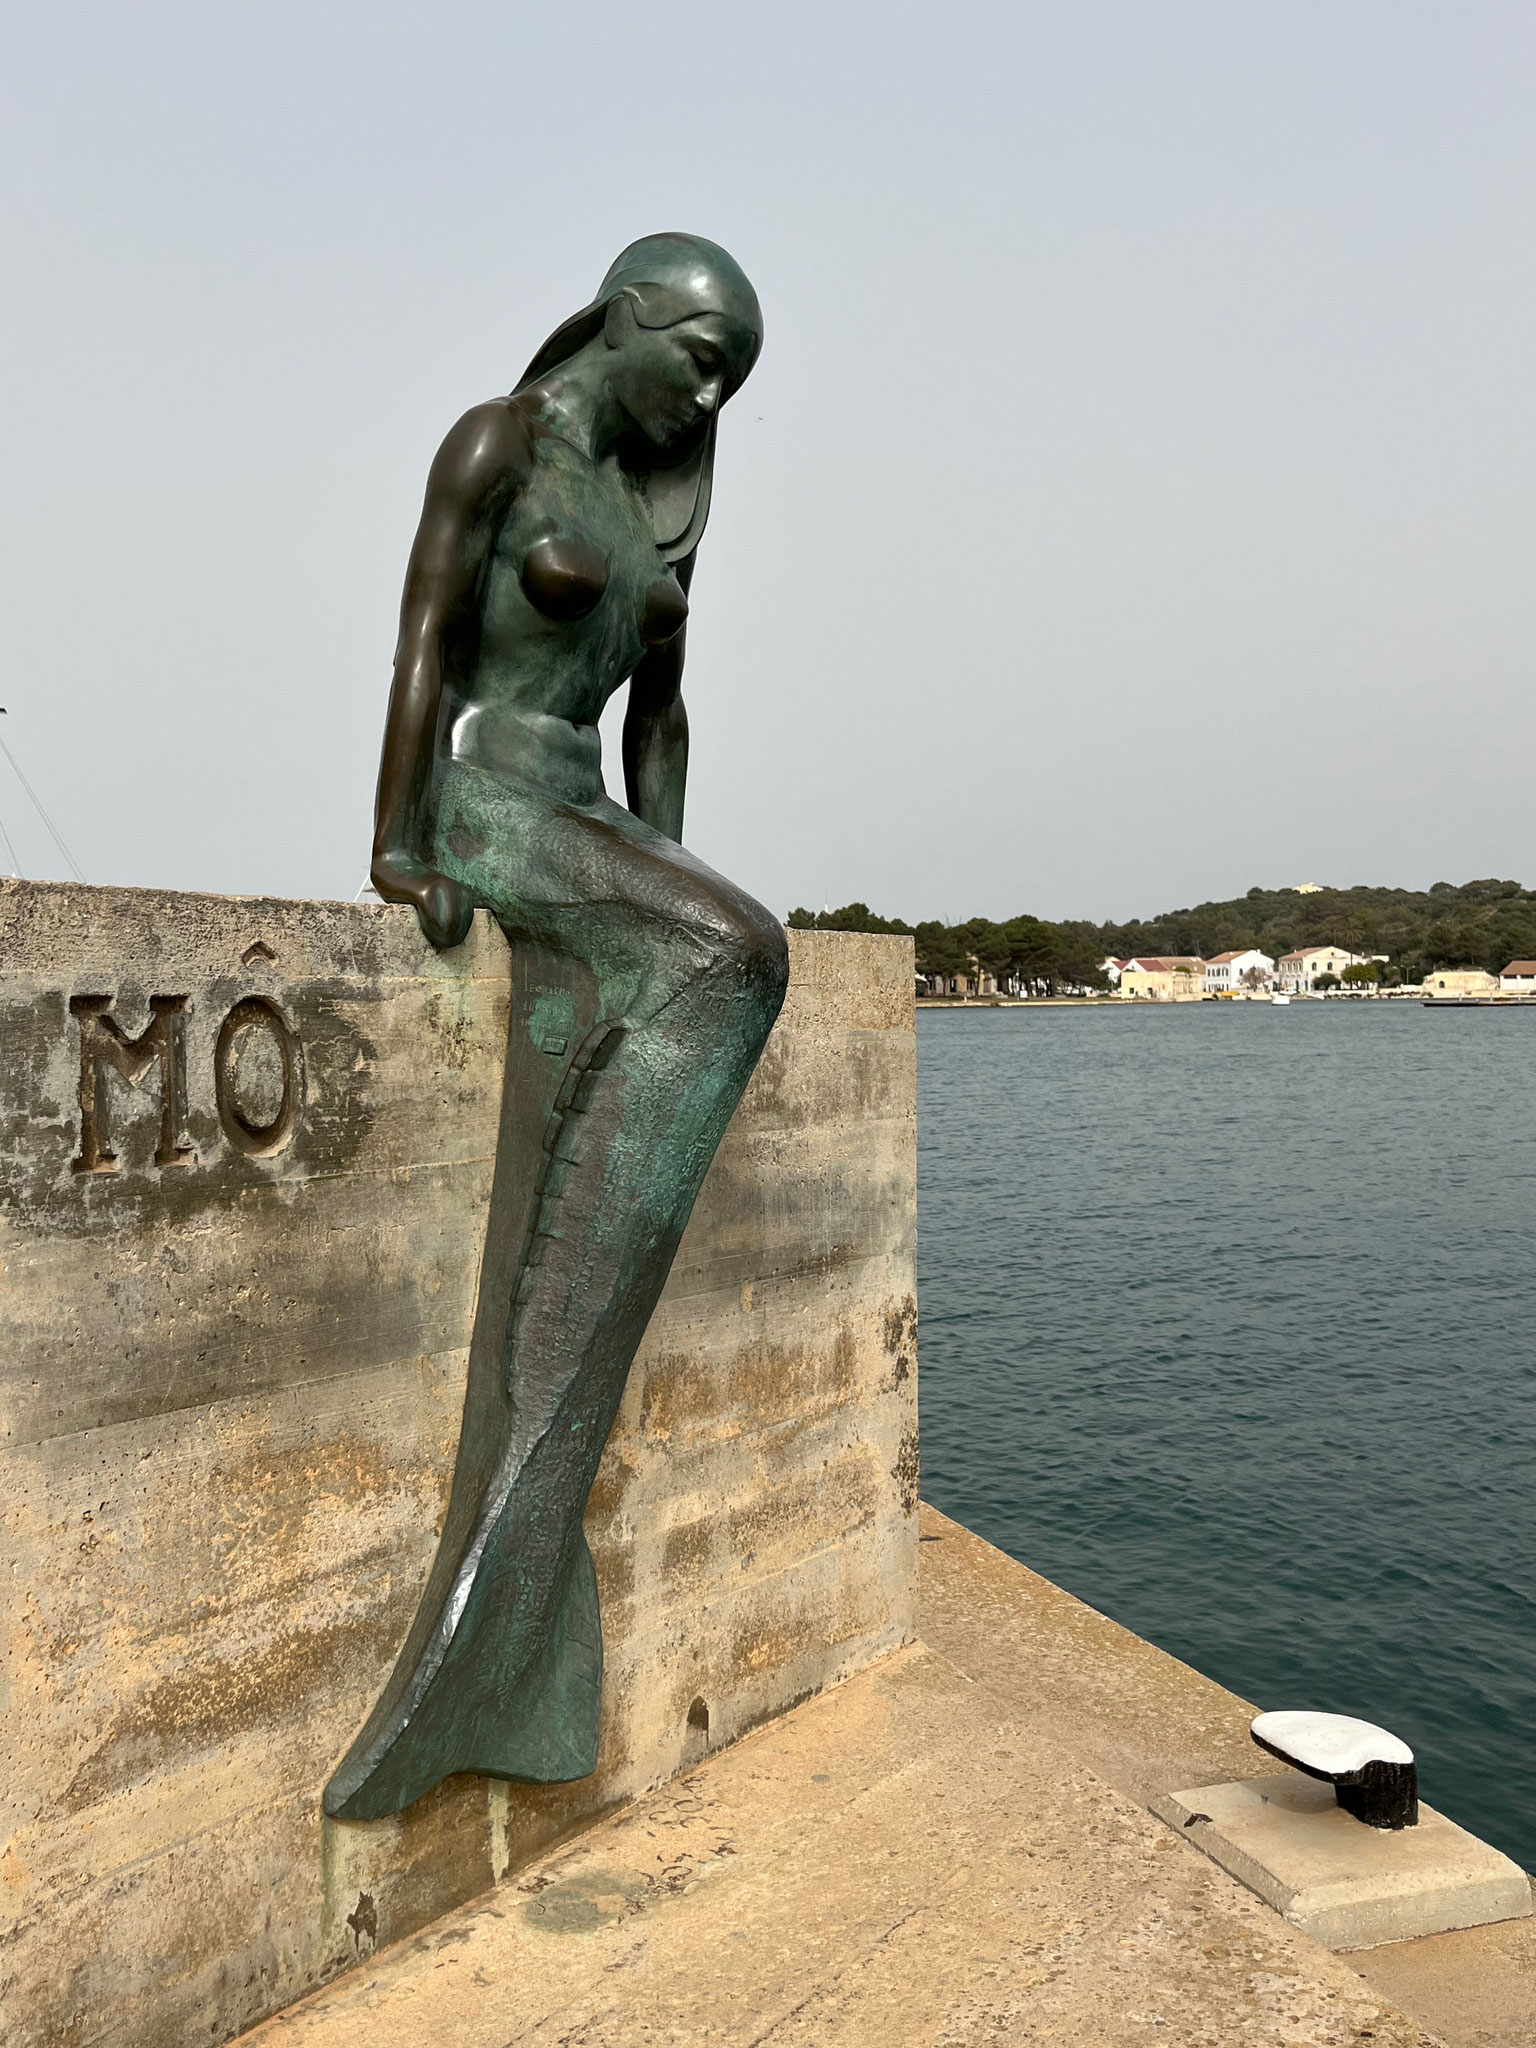 Wir spazieren auf der Küsten bzw. Hafenstrasse in die Haupstadt von Menorca, Mao, hinein.